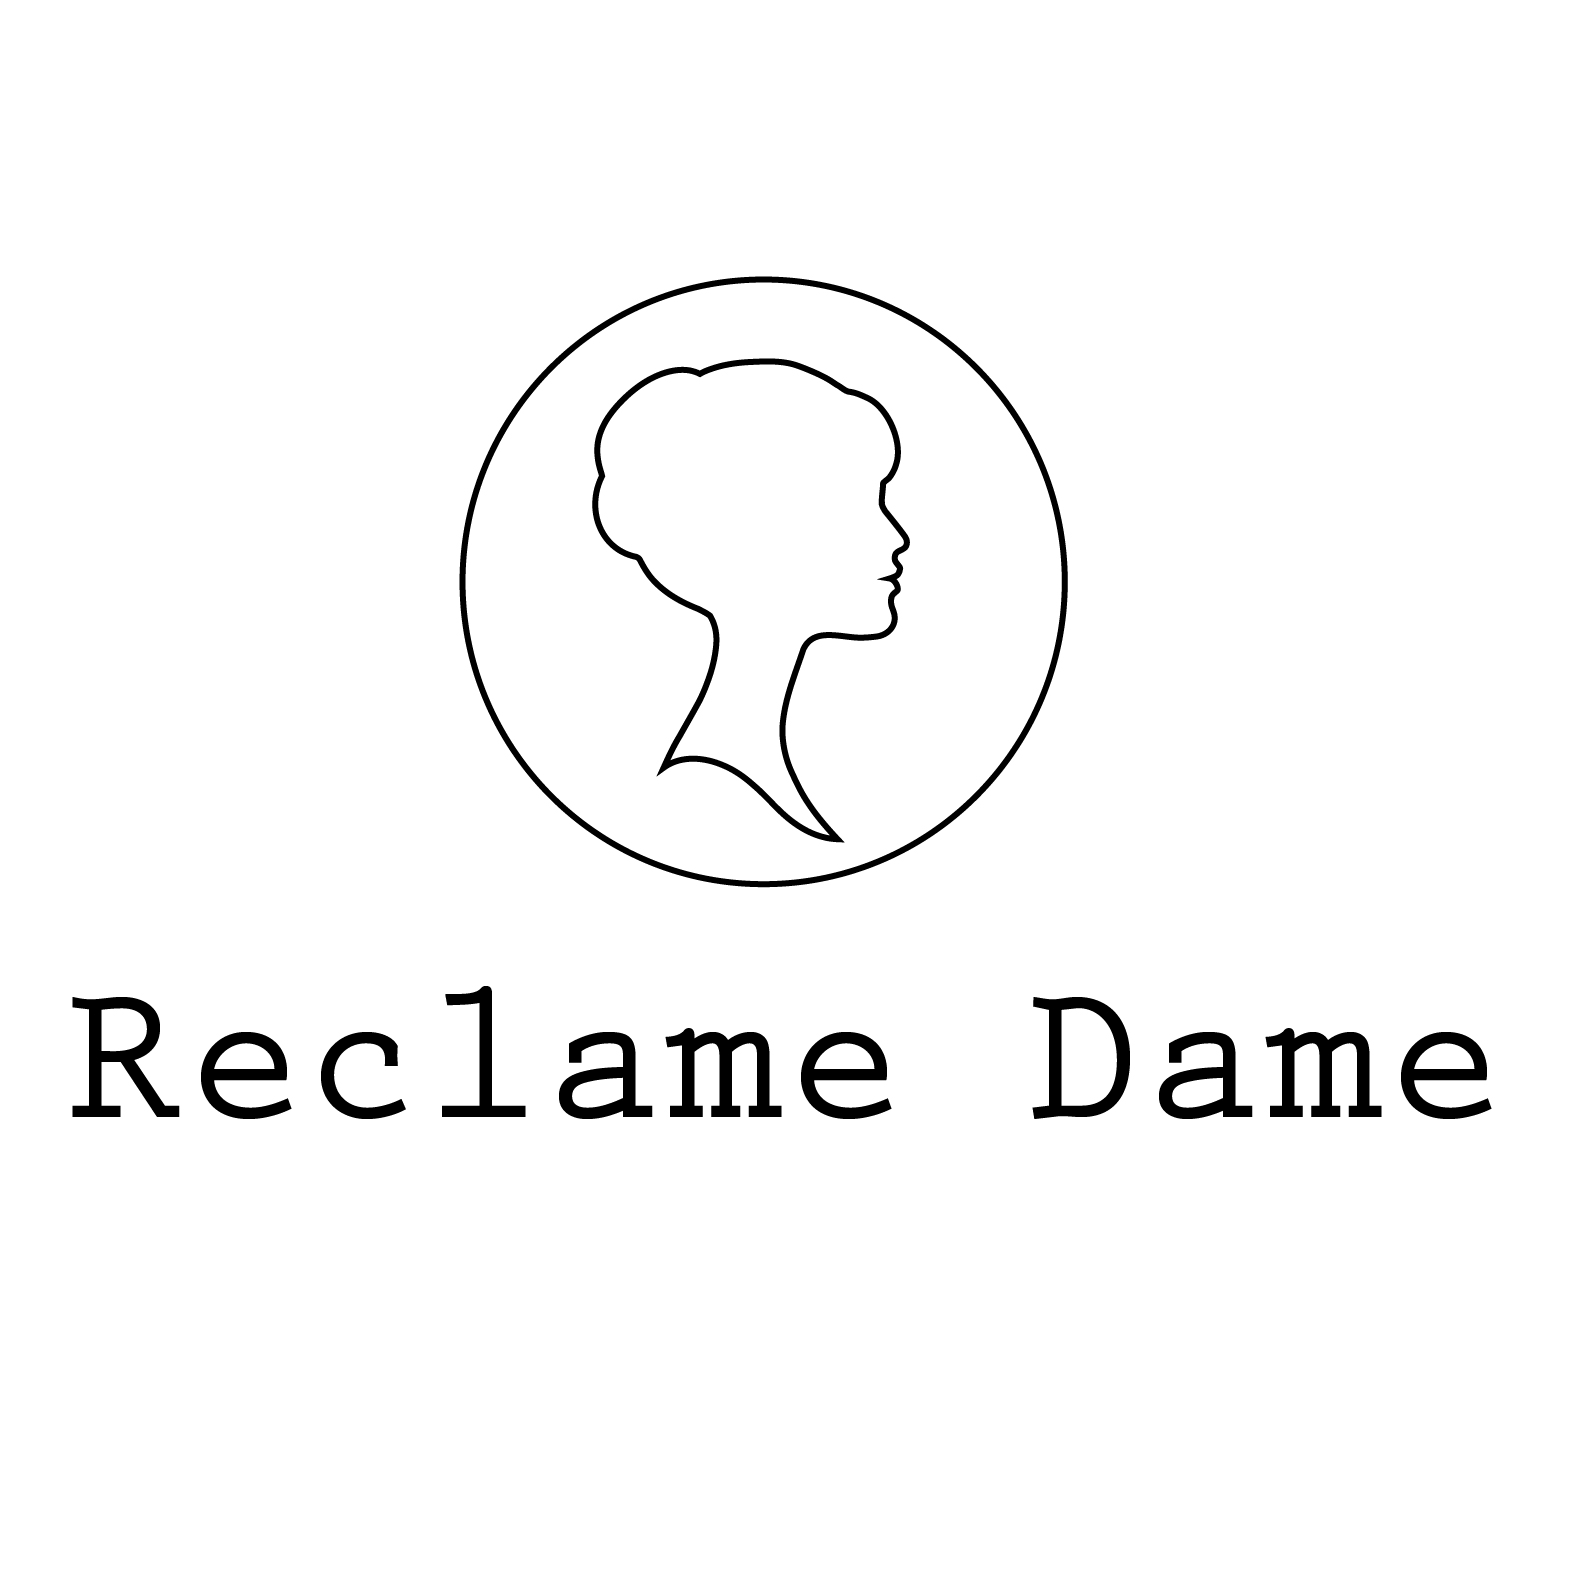 (c) Reclamedame.com